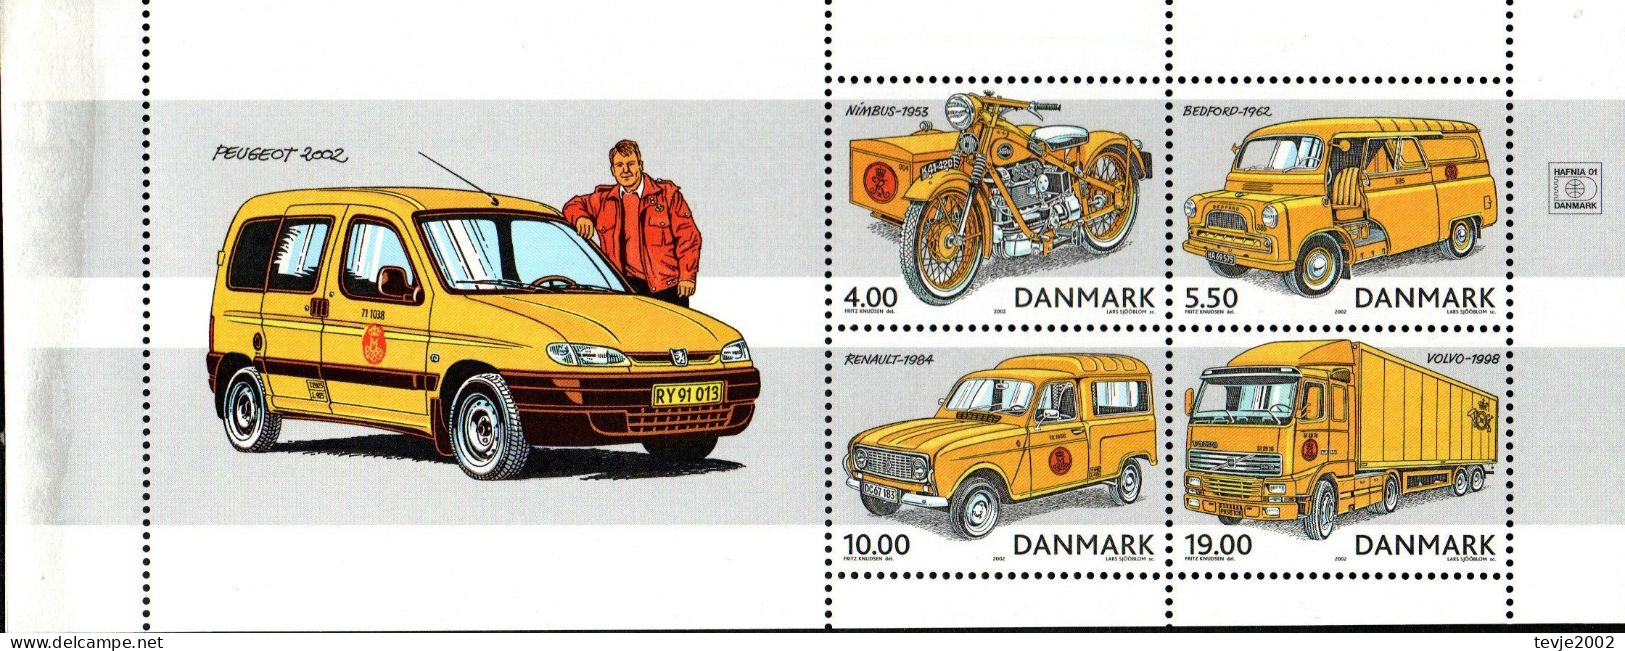 Dänemark 2002 - Mi.Nr. 1312 - 1315 (aus Markenheftchen) - Postfrisch MNH - Post - Ungebraucht